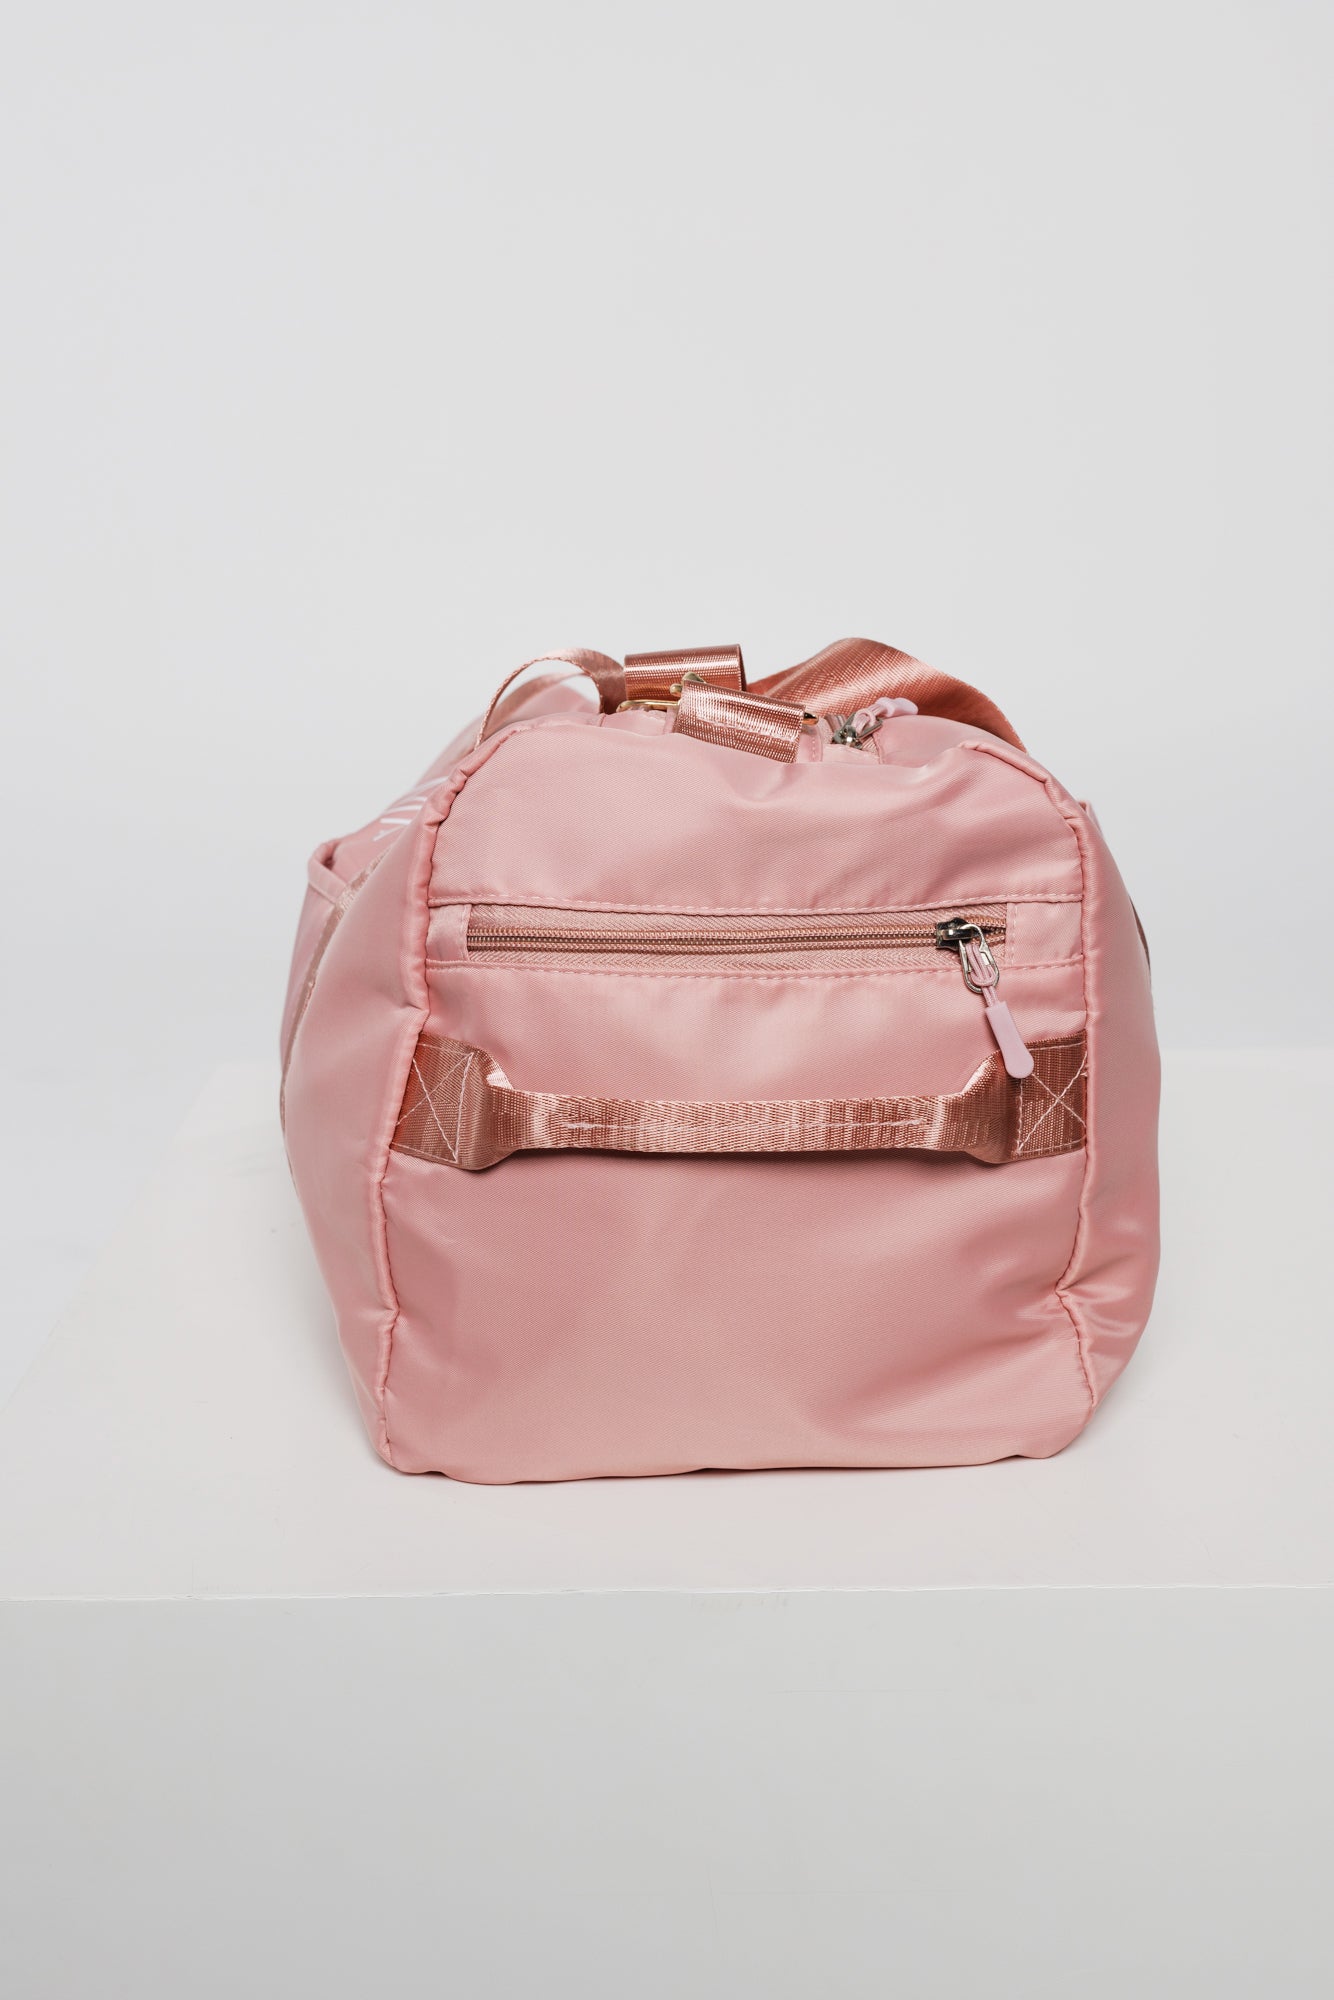 Omnia in Blush Pink | Functional Gym Duffel Bag 